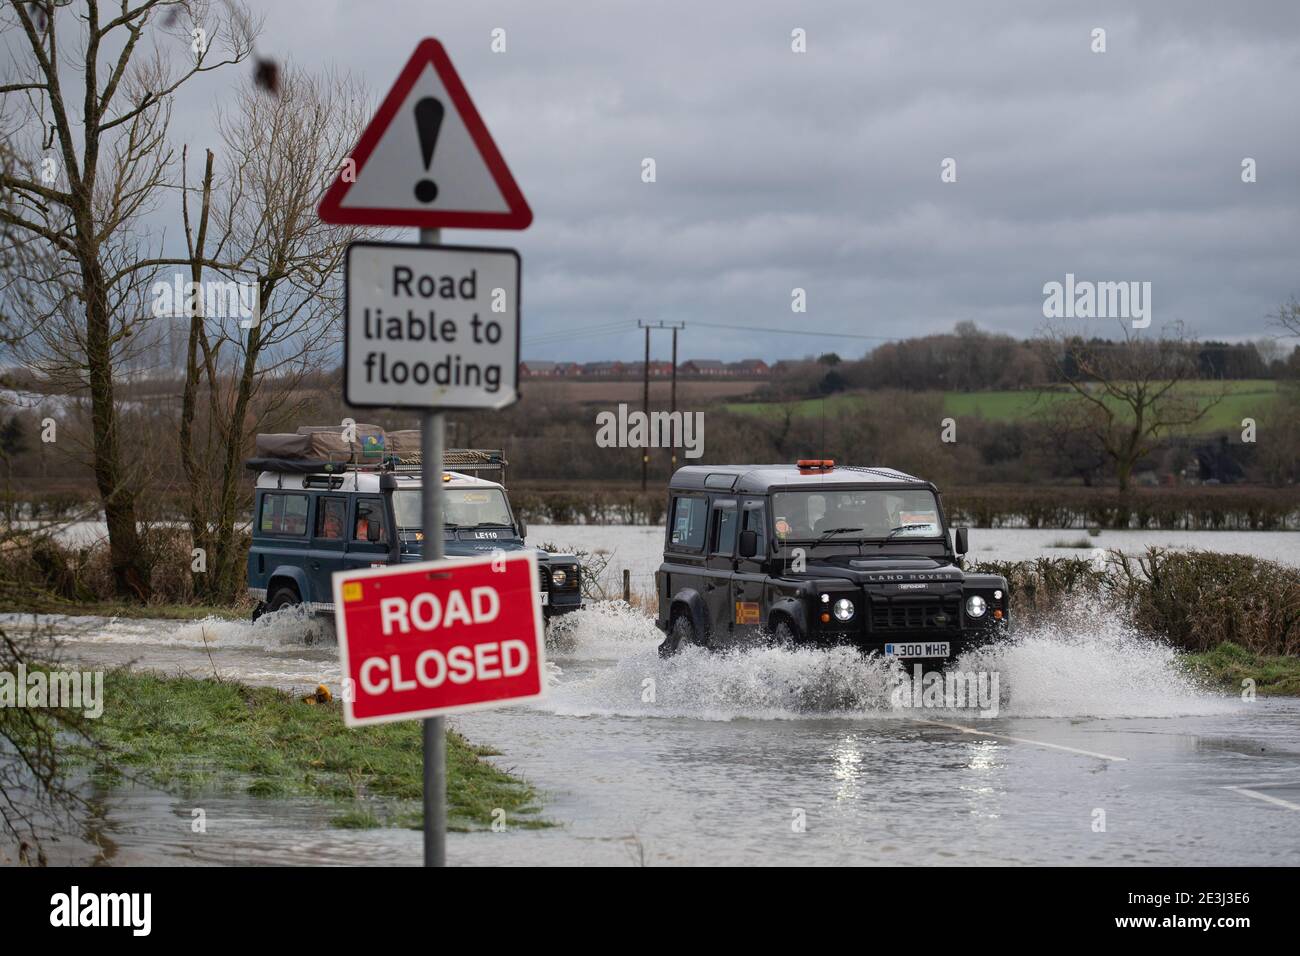 Les véhicules 4x4 Response de Leicestershire et Rutland traversent les eaux de crue de Mountsorrel, Leicestershire. Date de la photo: Mardi 19 janvier 2021. Banque D'Images